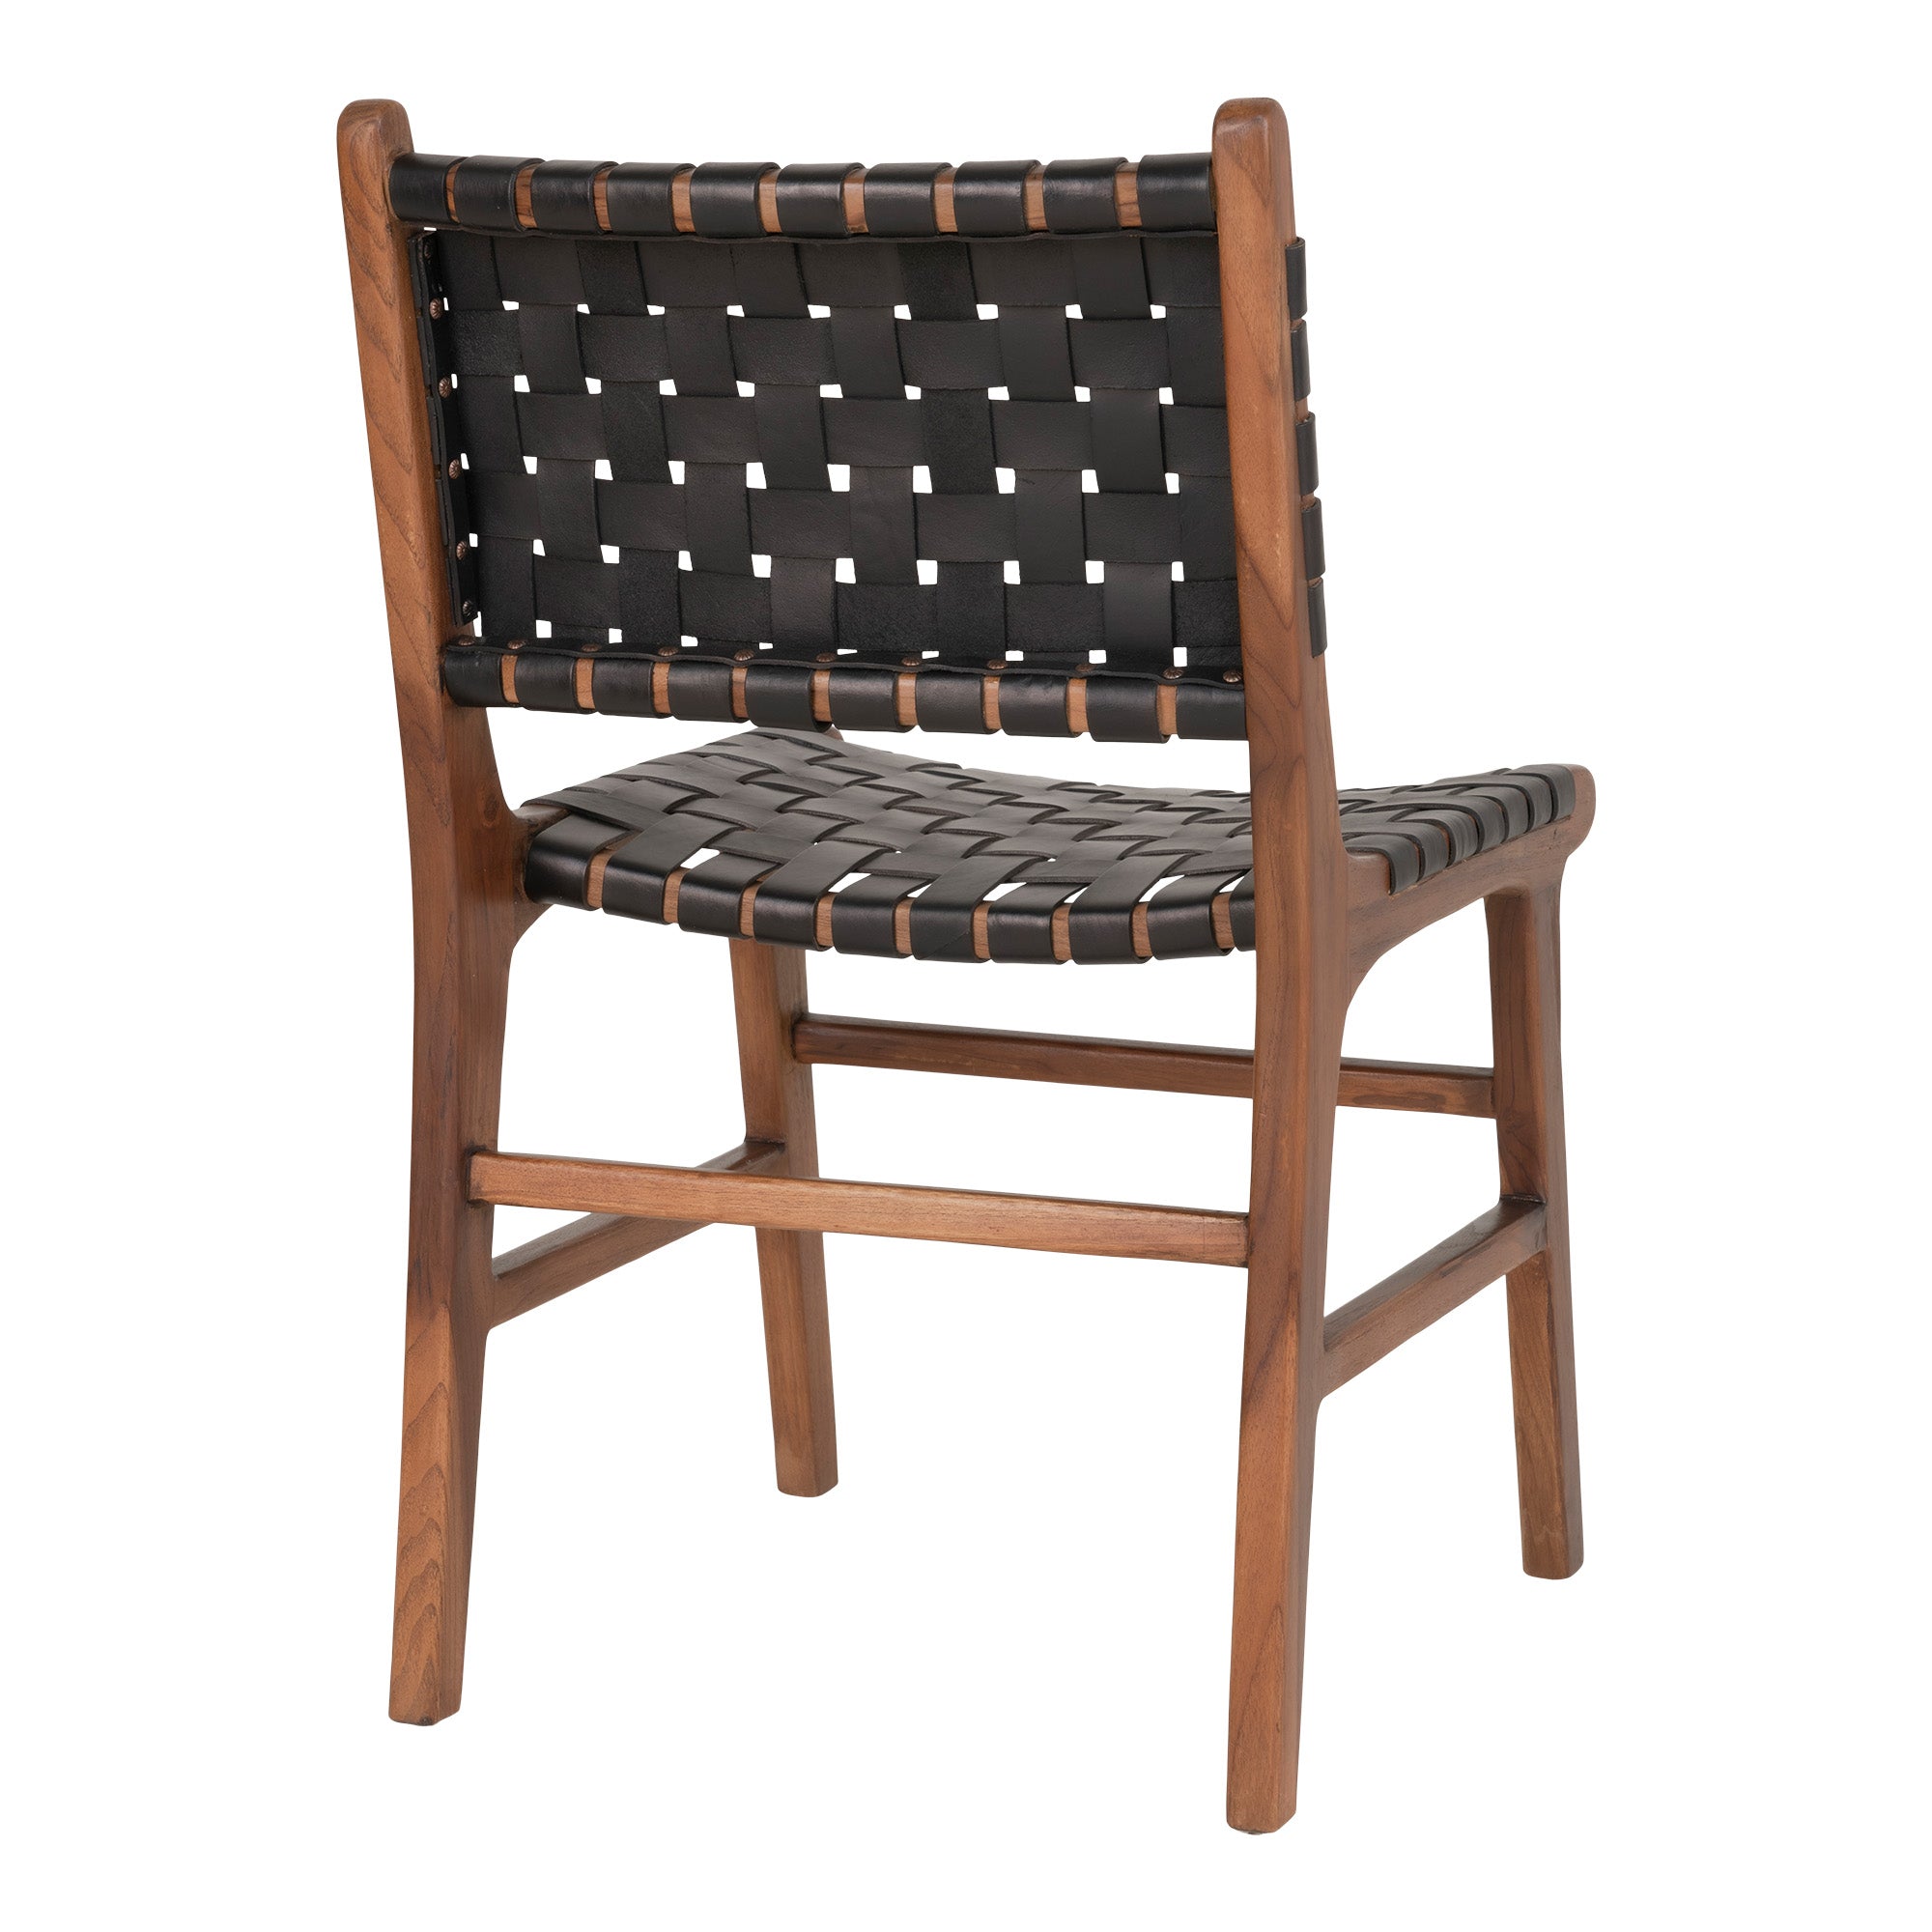 Perugia Spisebordsstol - Spisebordsstol I Læder, Sort Med Teak Ben ⎮ Sæt af 2 stk. ⎮ 5713917010561 ⎮ 1001452 